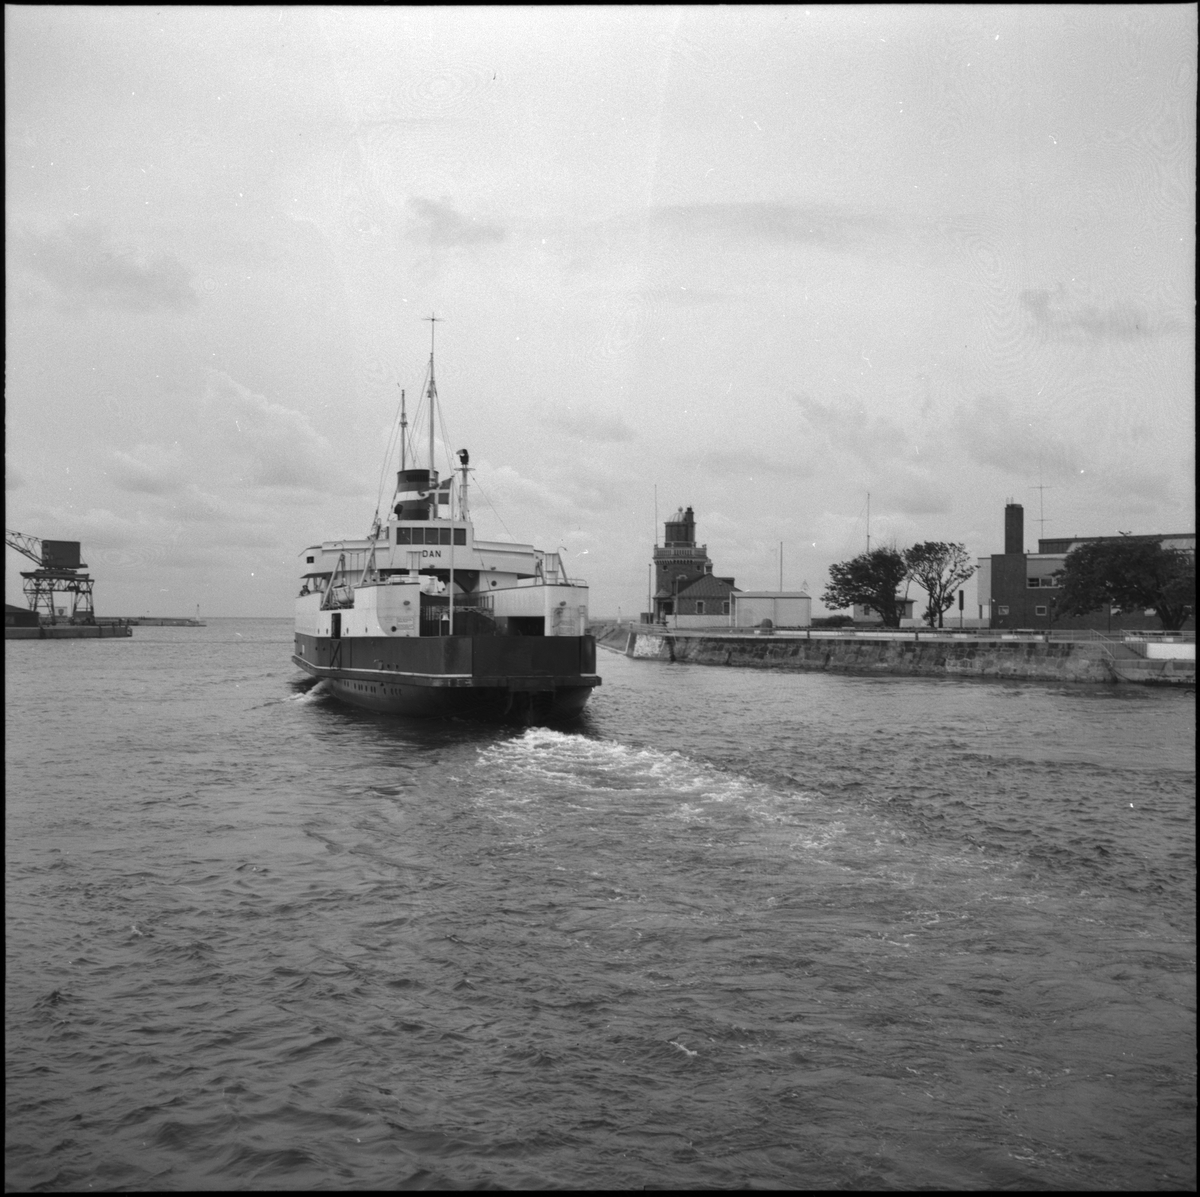 Helsingborg. Utsikt från Kärnan, Busstorget. Fartyget Dan lägger ut från hamn. S/S Dan ägdes av DSB (Danske Statsbaner) och trafikerade Helsinborg - Öresund från 1935 till 1973. I och med invigningen av Öresundsbron år 2000 upphörde tågfärjetrafiken, då tågen därefter endast färdades över bron